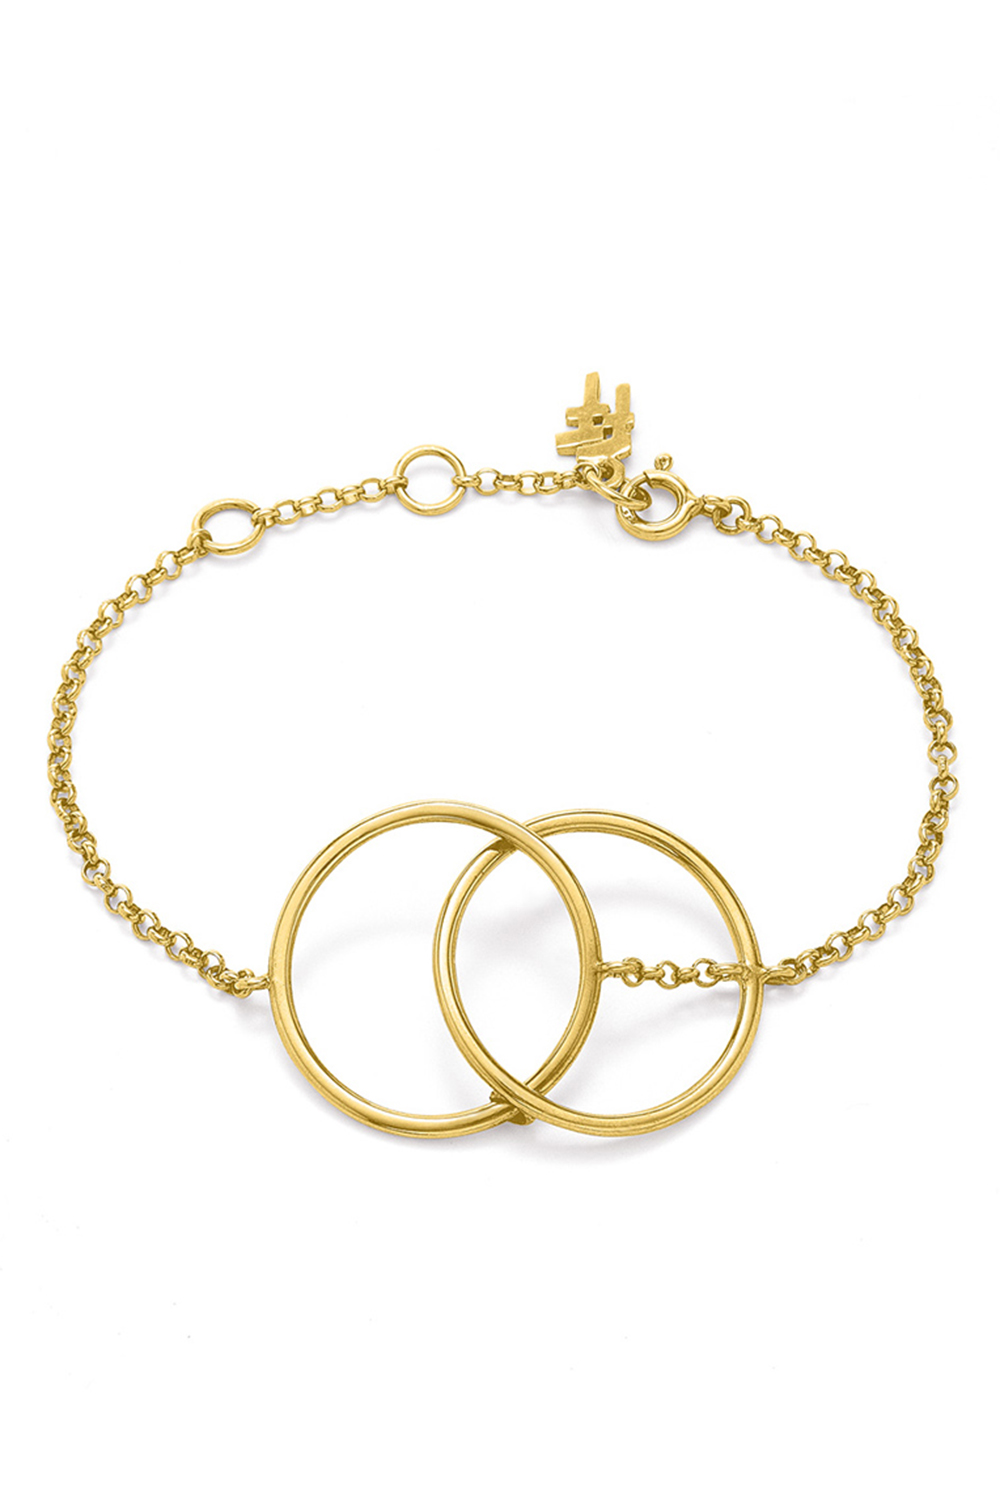 Γυναικεία/Αξεσουάρ/Κοσμήματα/Βραχιόλια FOLLI FOLLIE - Γυναικείο ασημένιο βραχιόλι FOLLI FOLLIE LINK UP χρυσό